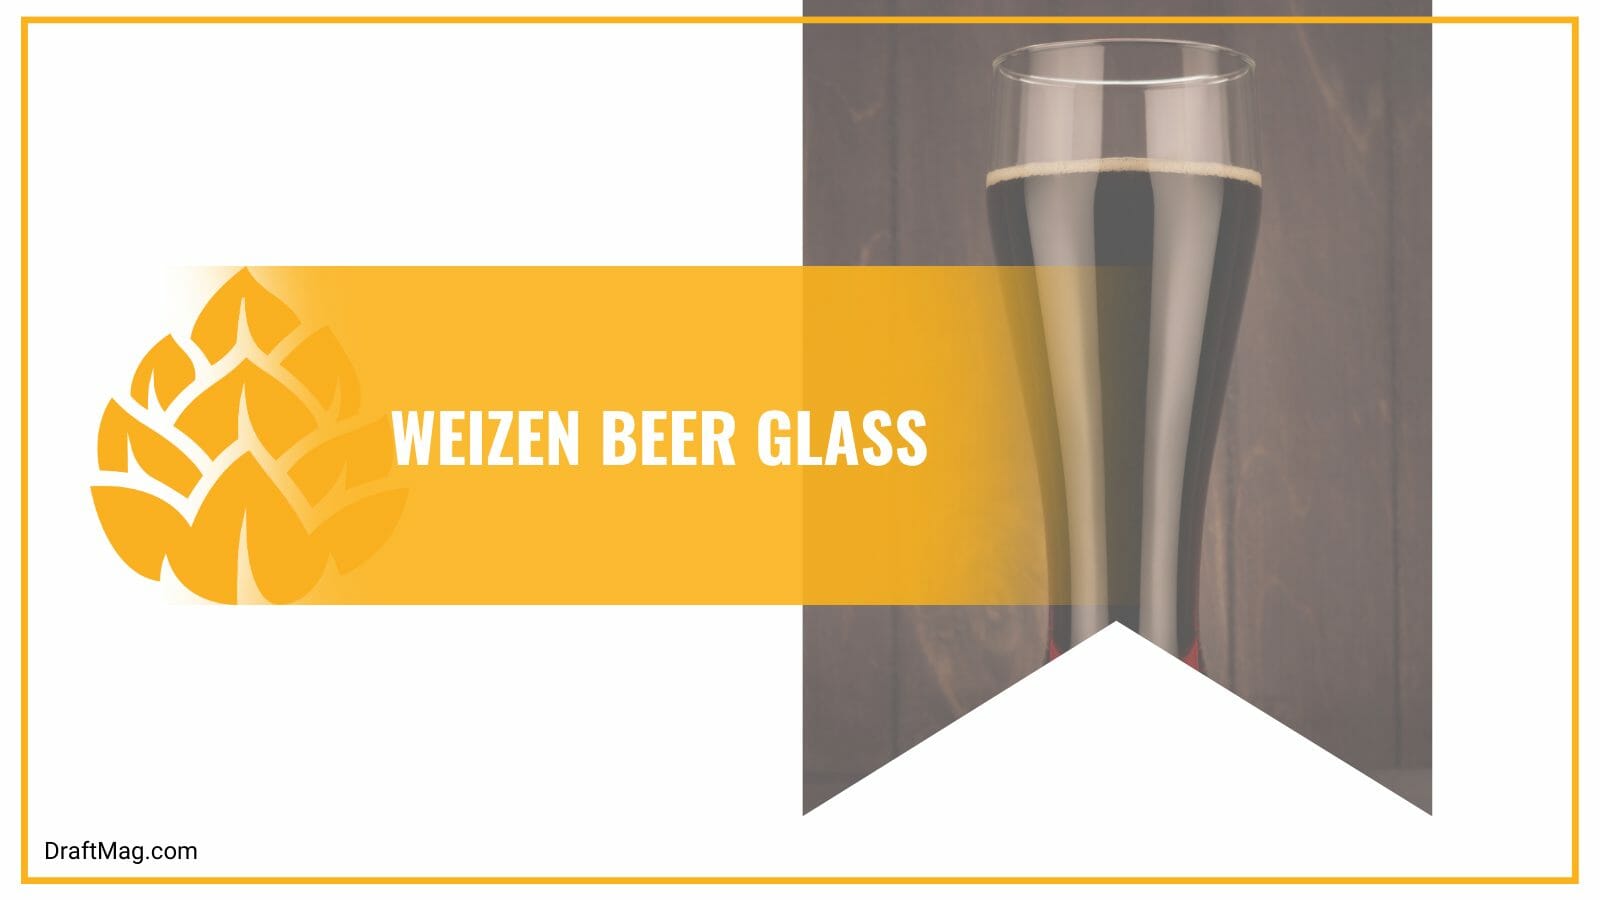 Weizen beer glass